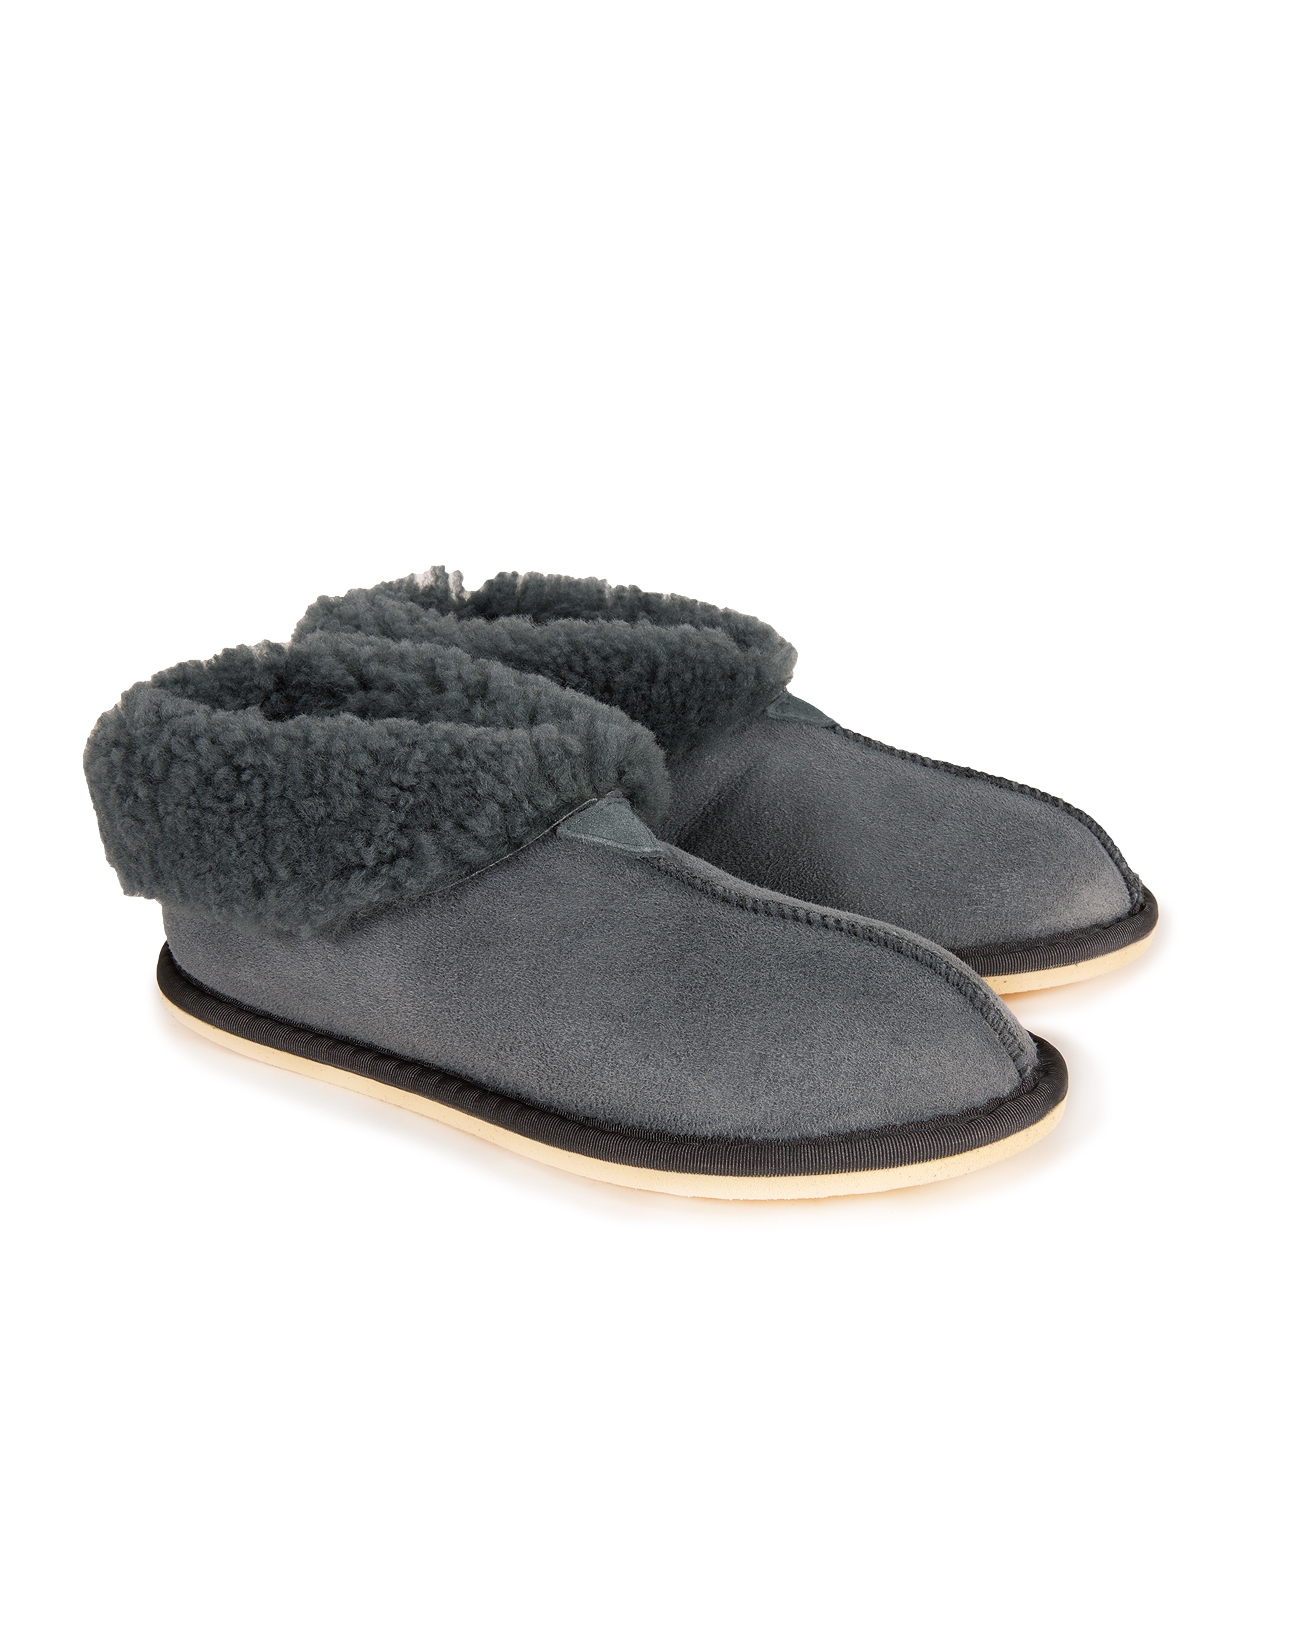 womens sheepskin slippers sale